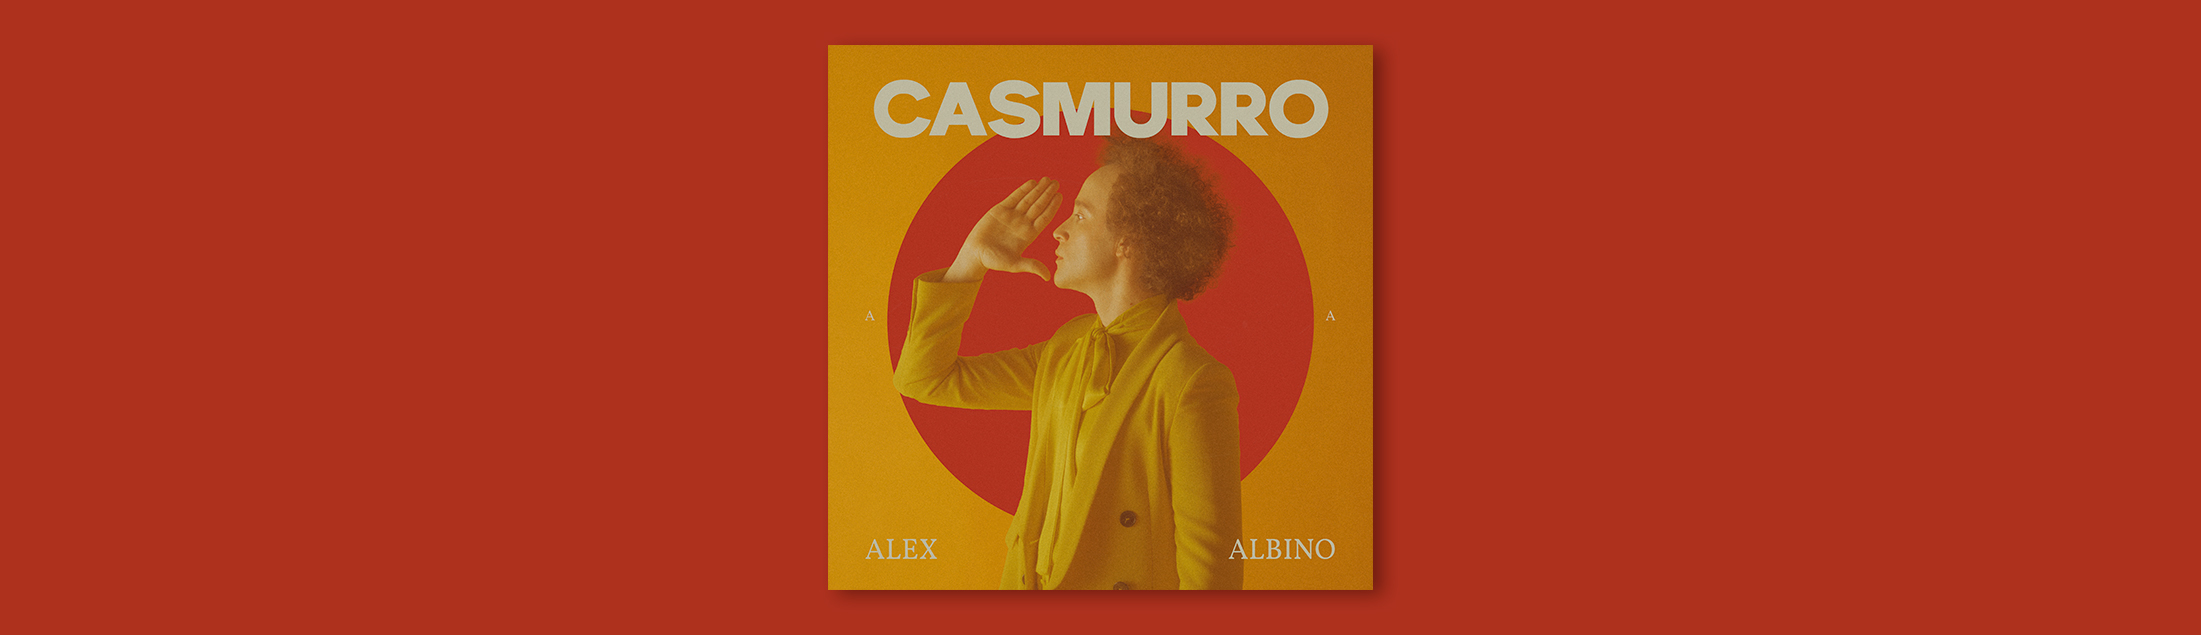 Após ser premiado em festival nos EUA, Alex Albino lança “Casmurro”